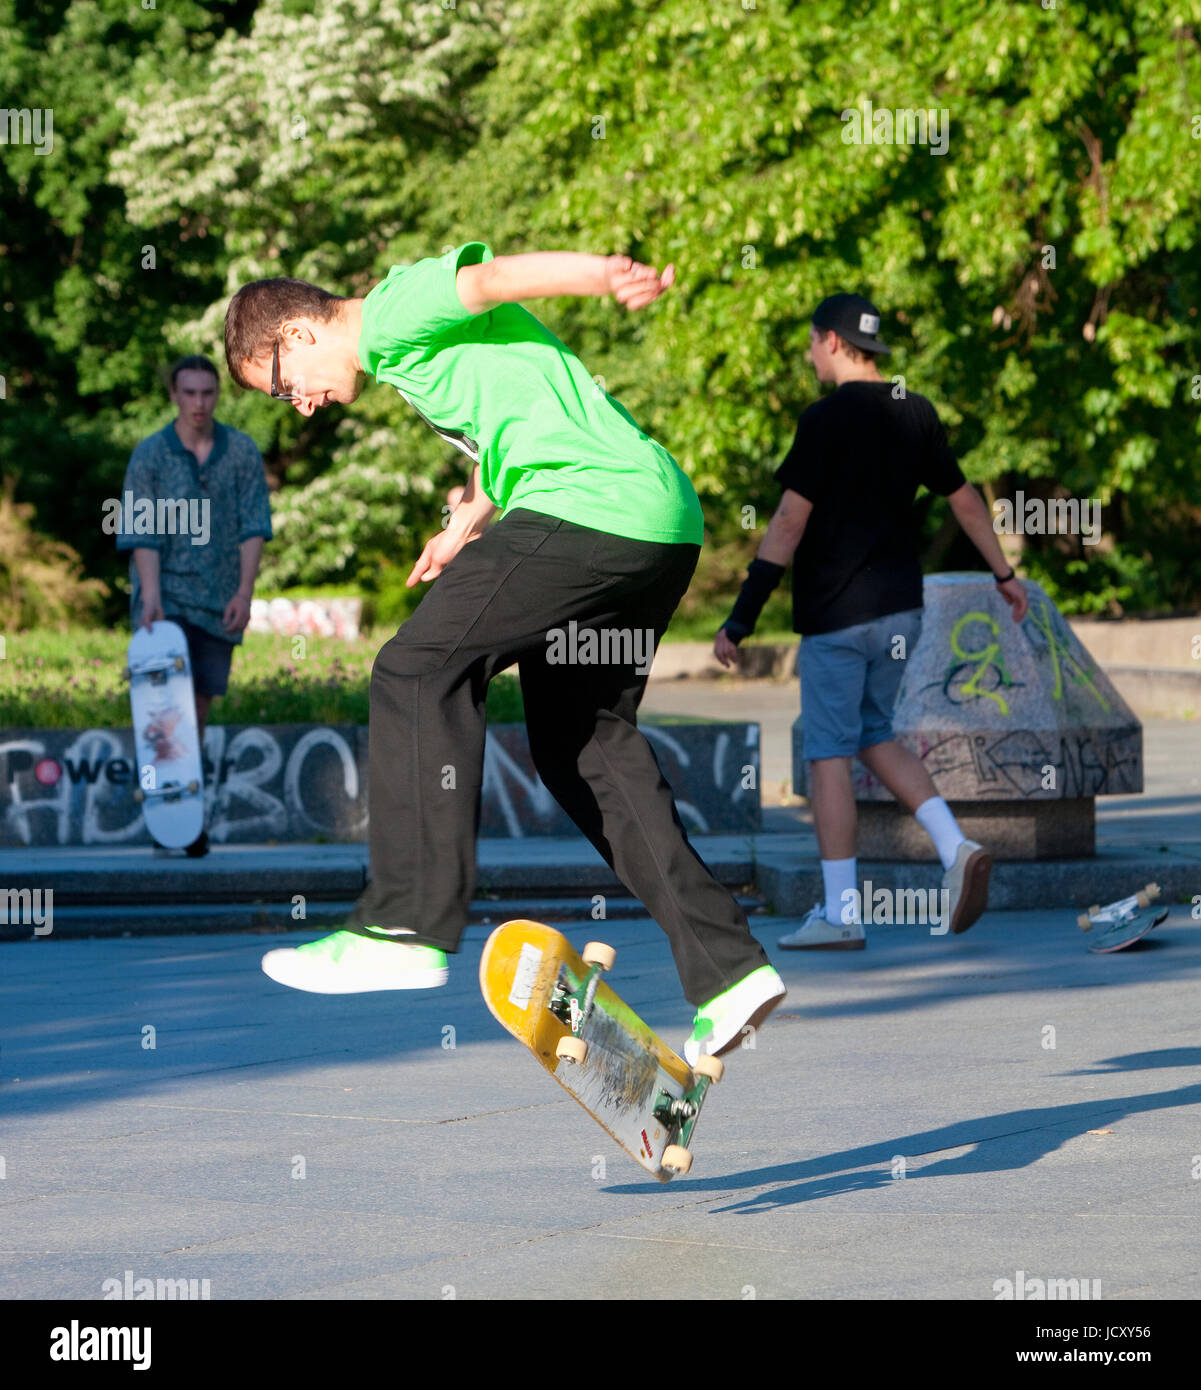 Skateboarding - Skater jumping on  skateboard.. Stock Photo